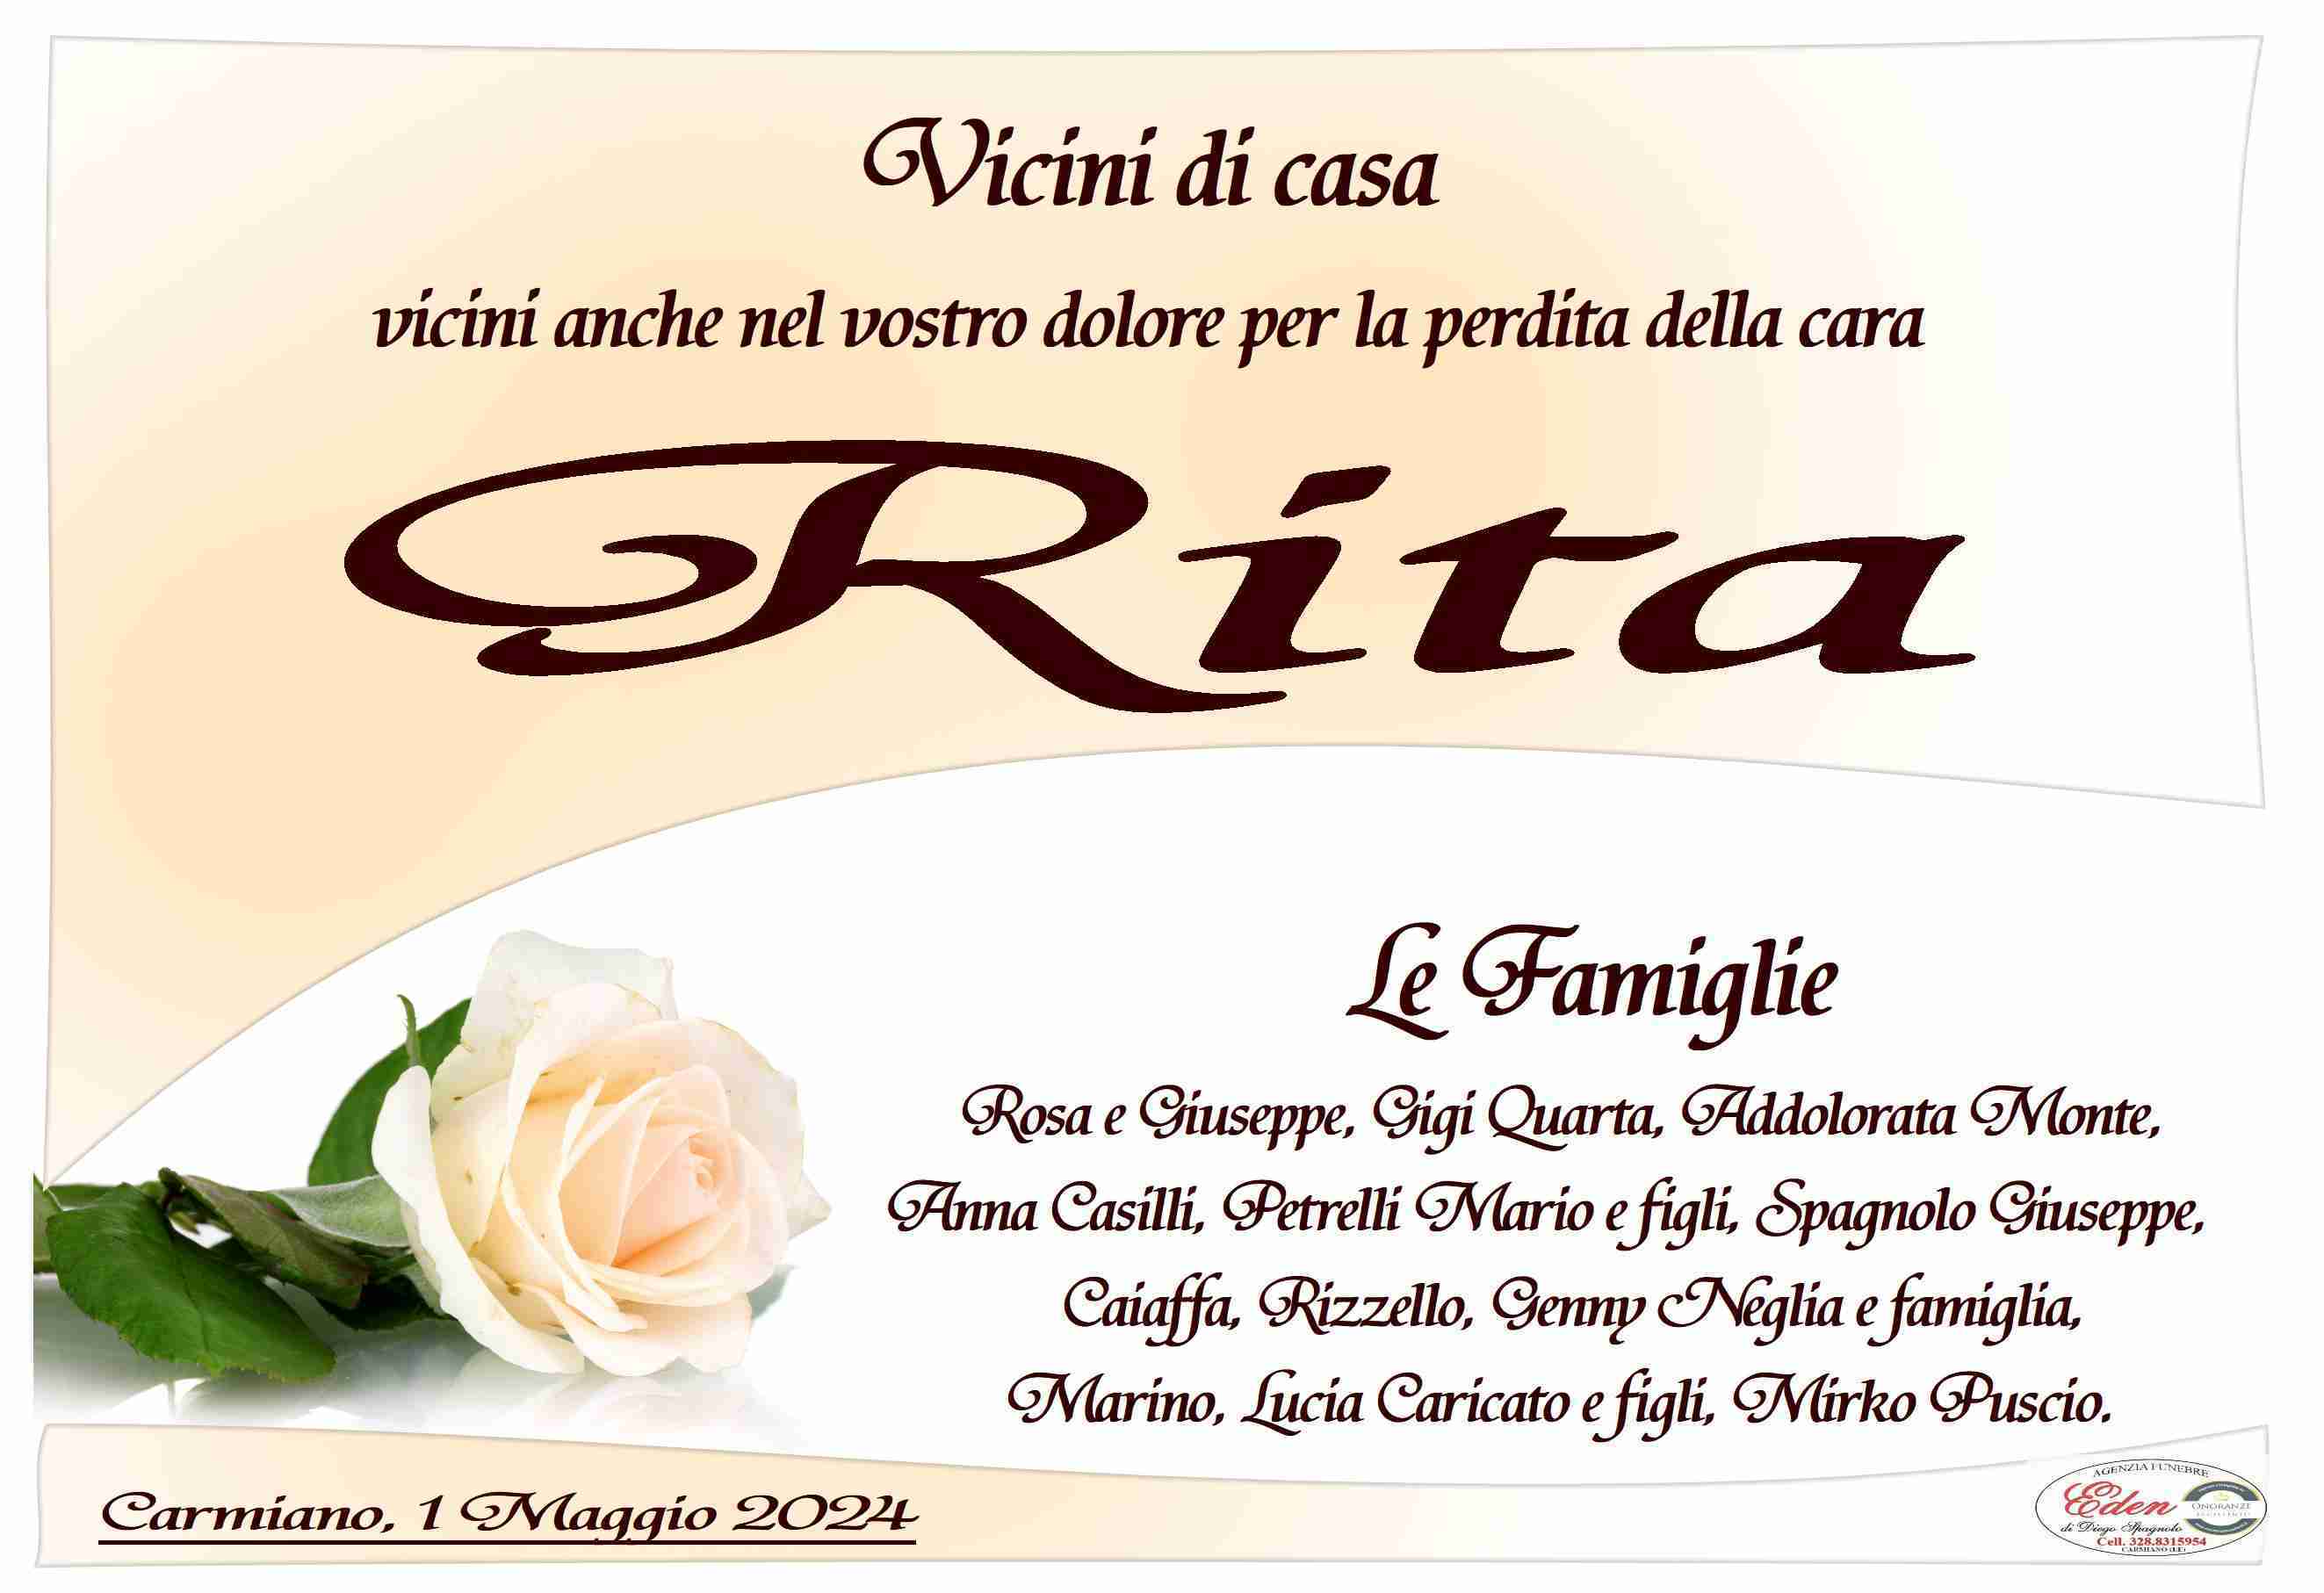 Rita Quarta